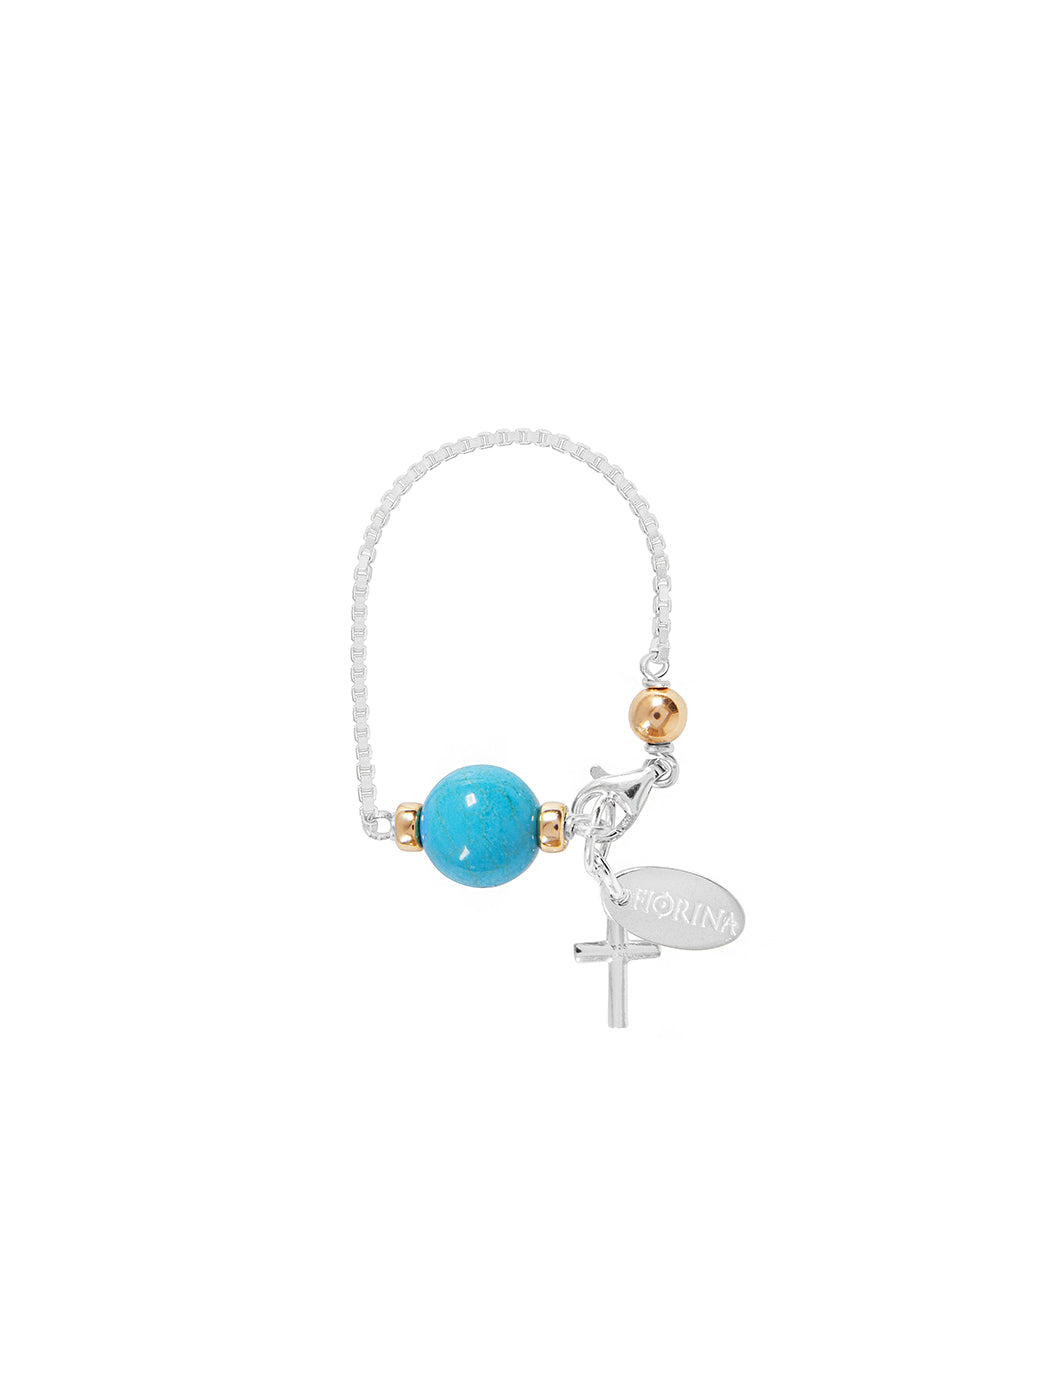 Fiorina Jewellery Baby Comfort Bracelet Turquoise